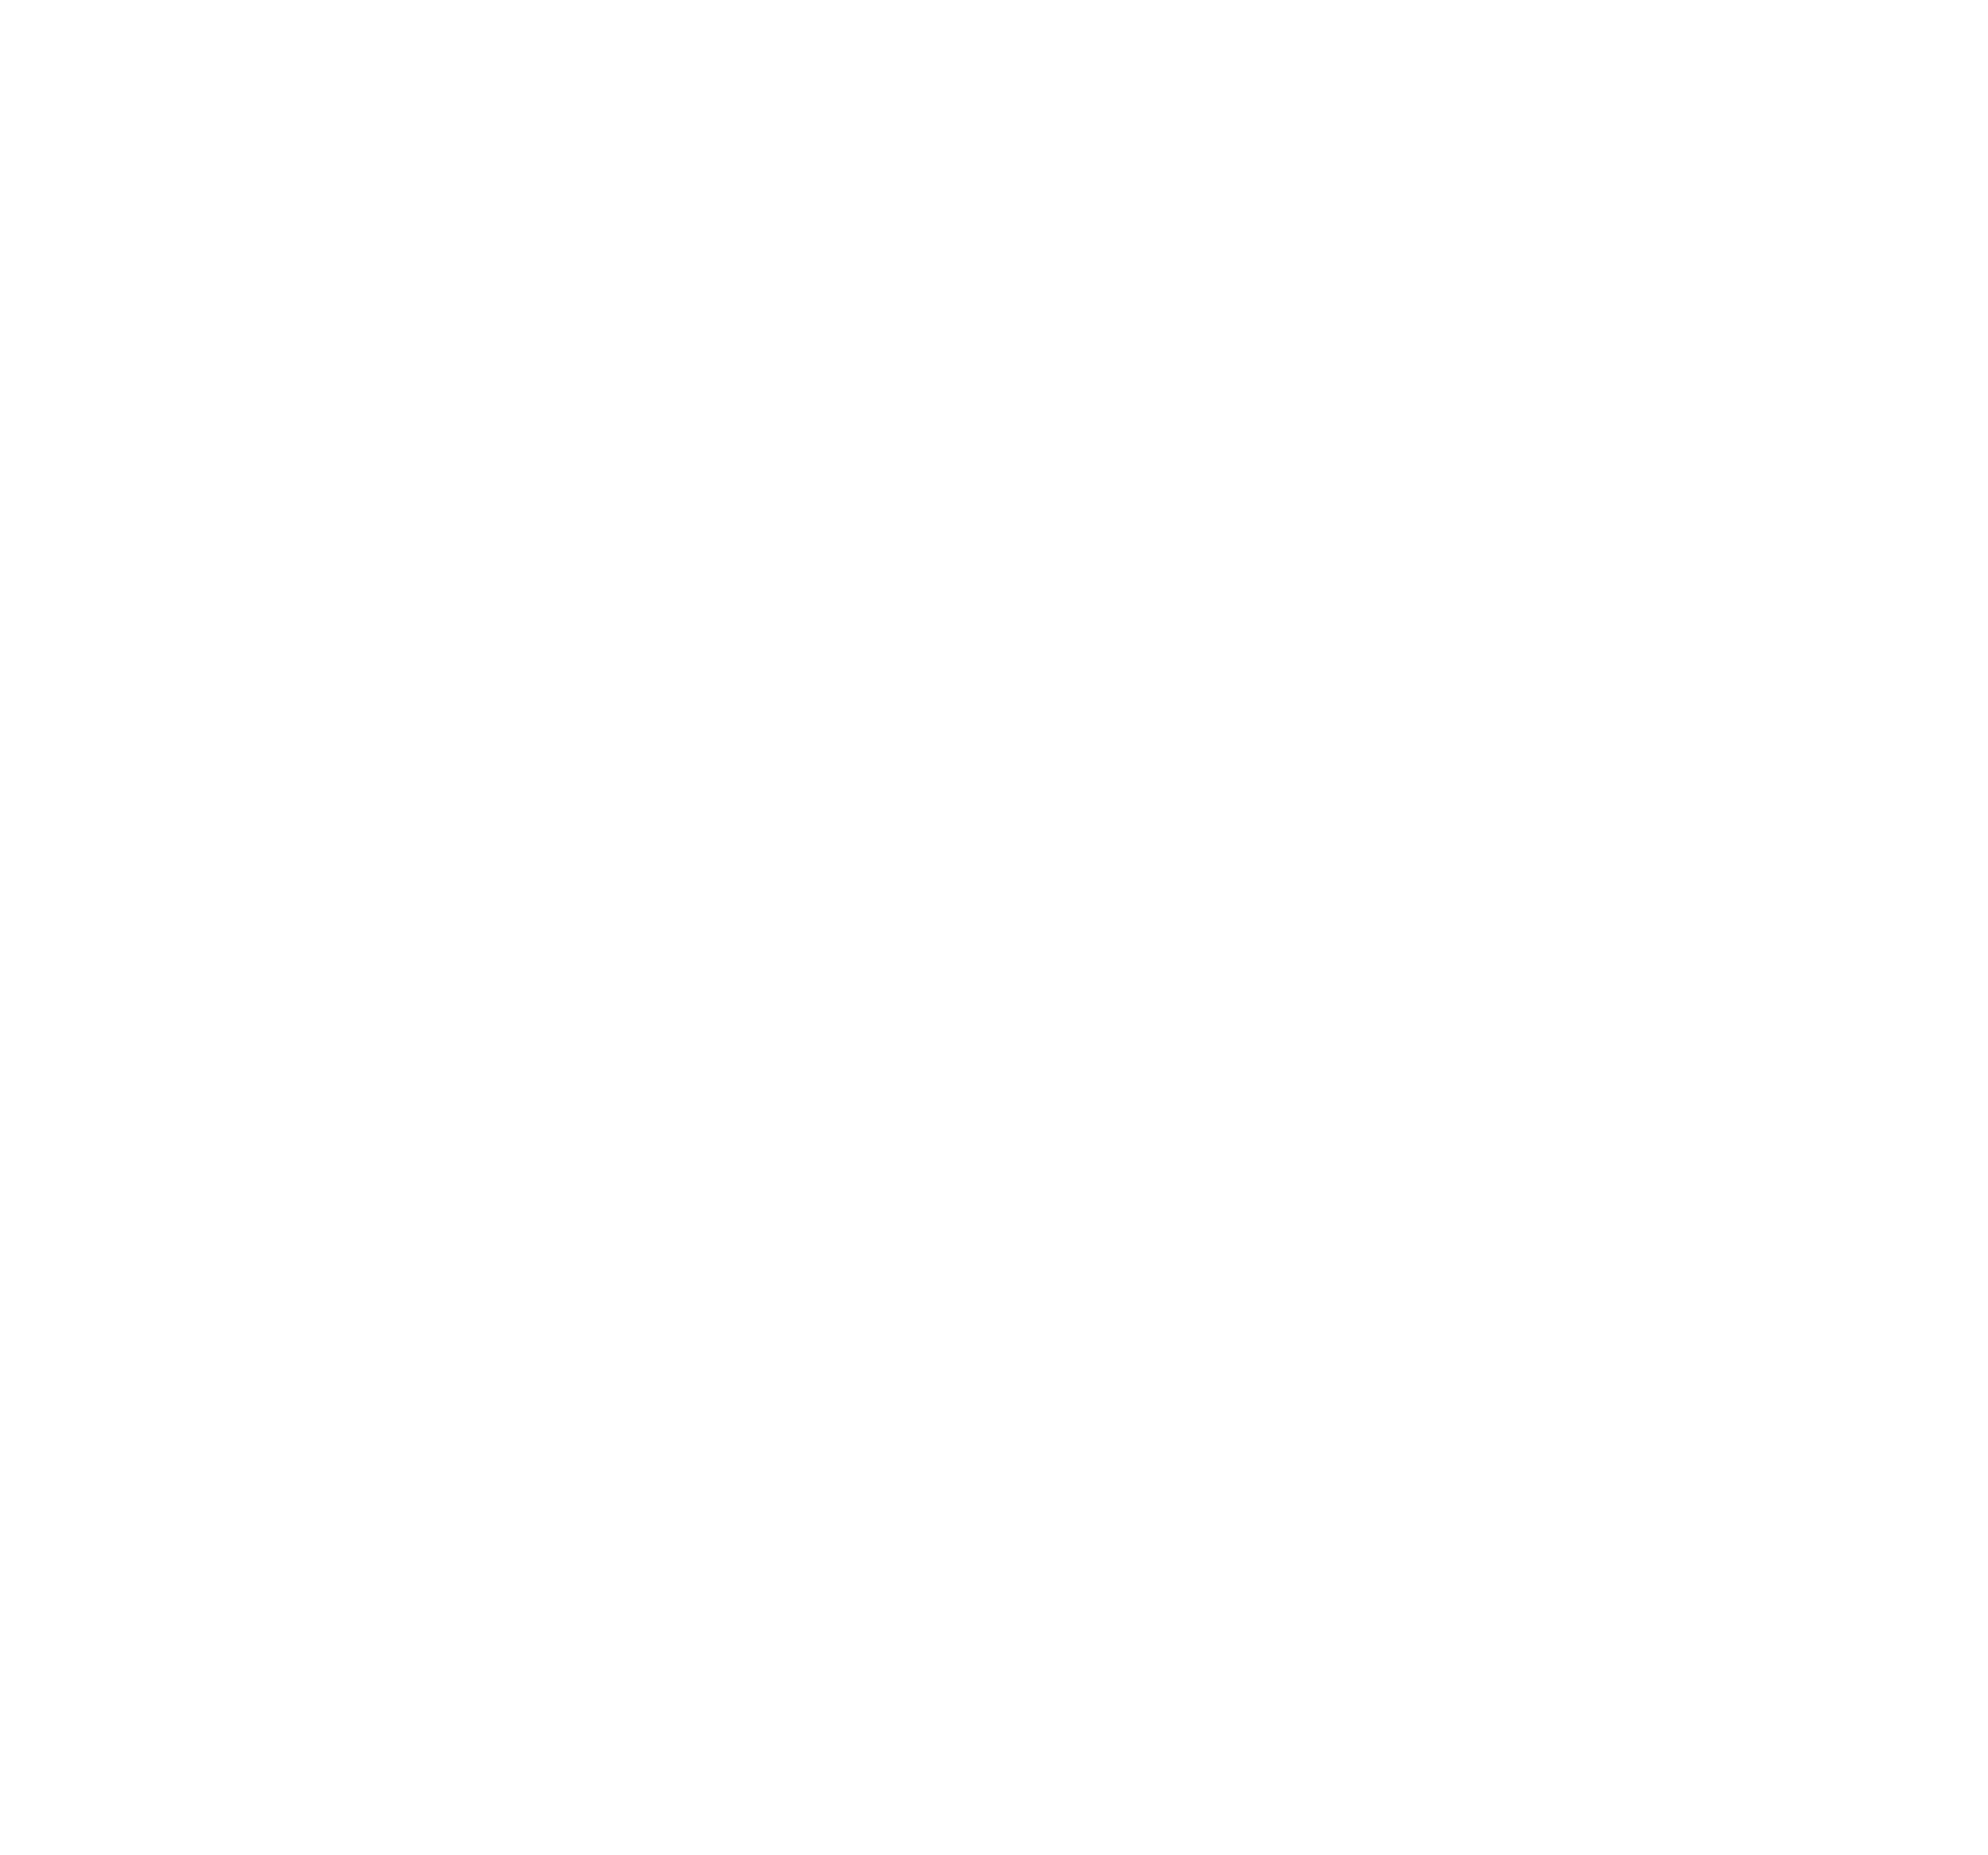 CarlingPetri